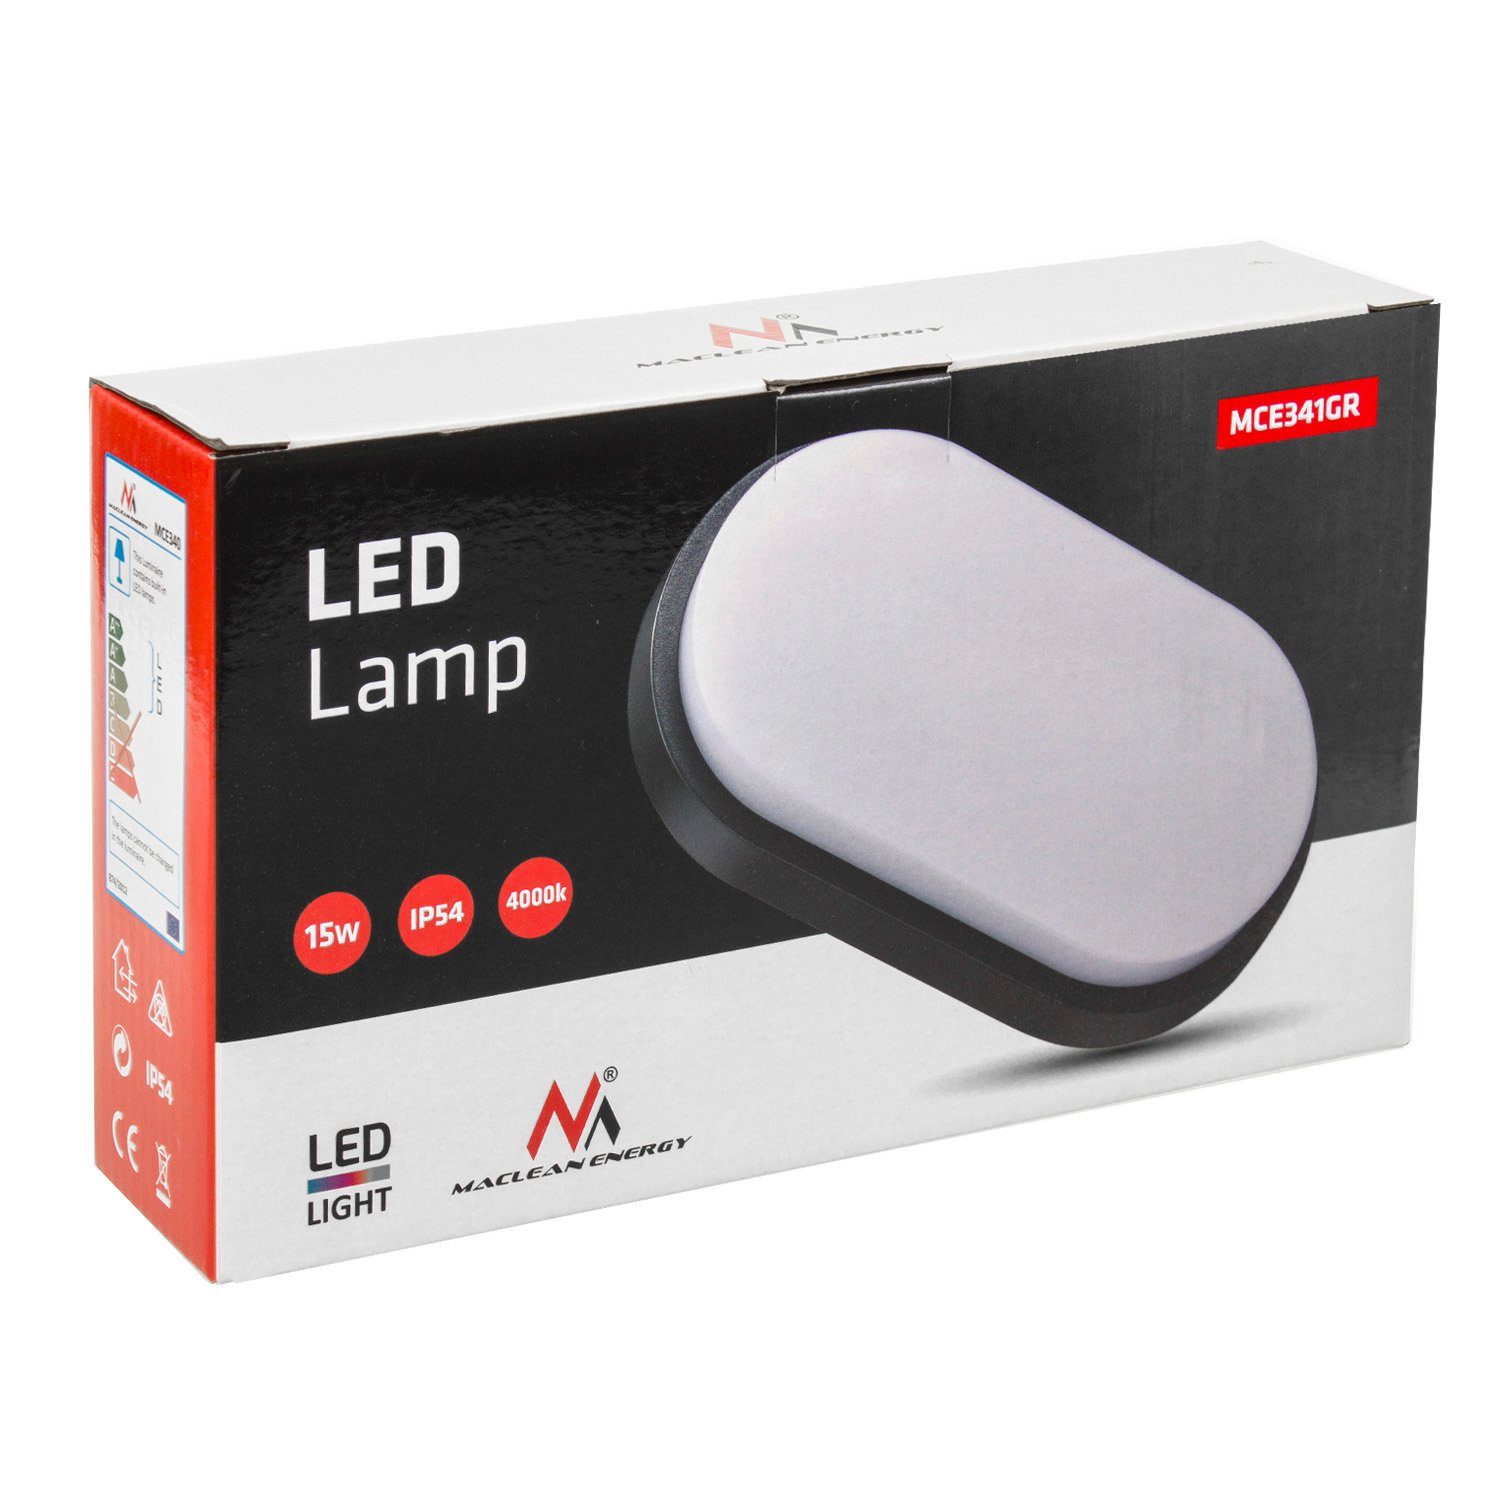 15W Wand- Deckenleuchte LED 1100lm und Deckenleuchte MCE341, grau/weiß Maclean LED IP54